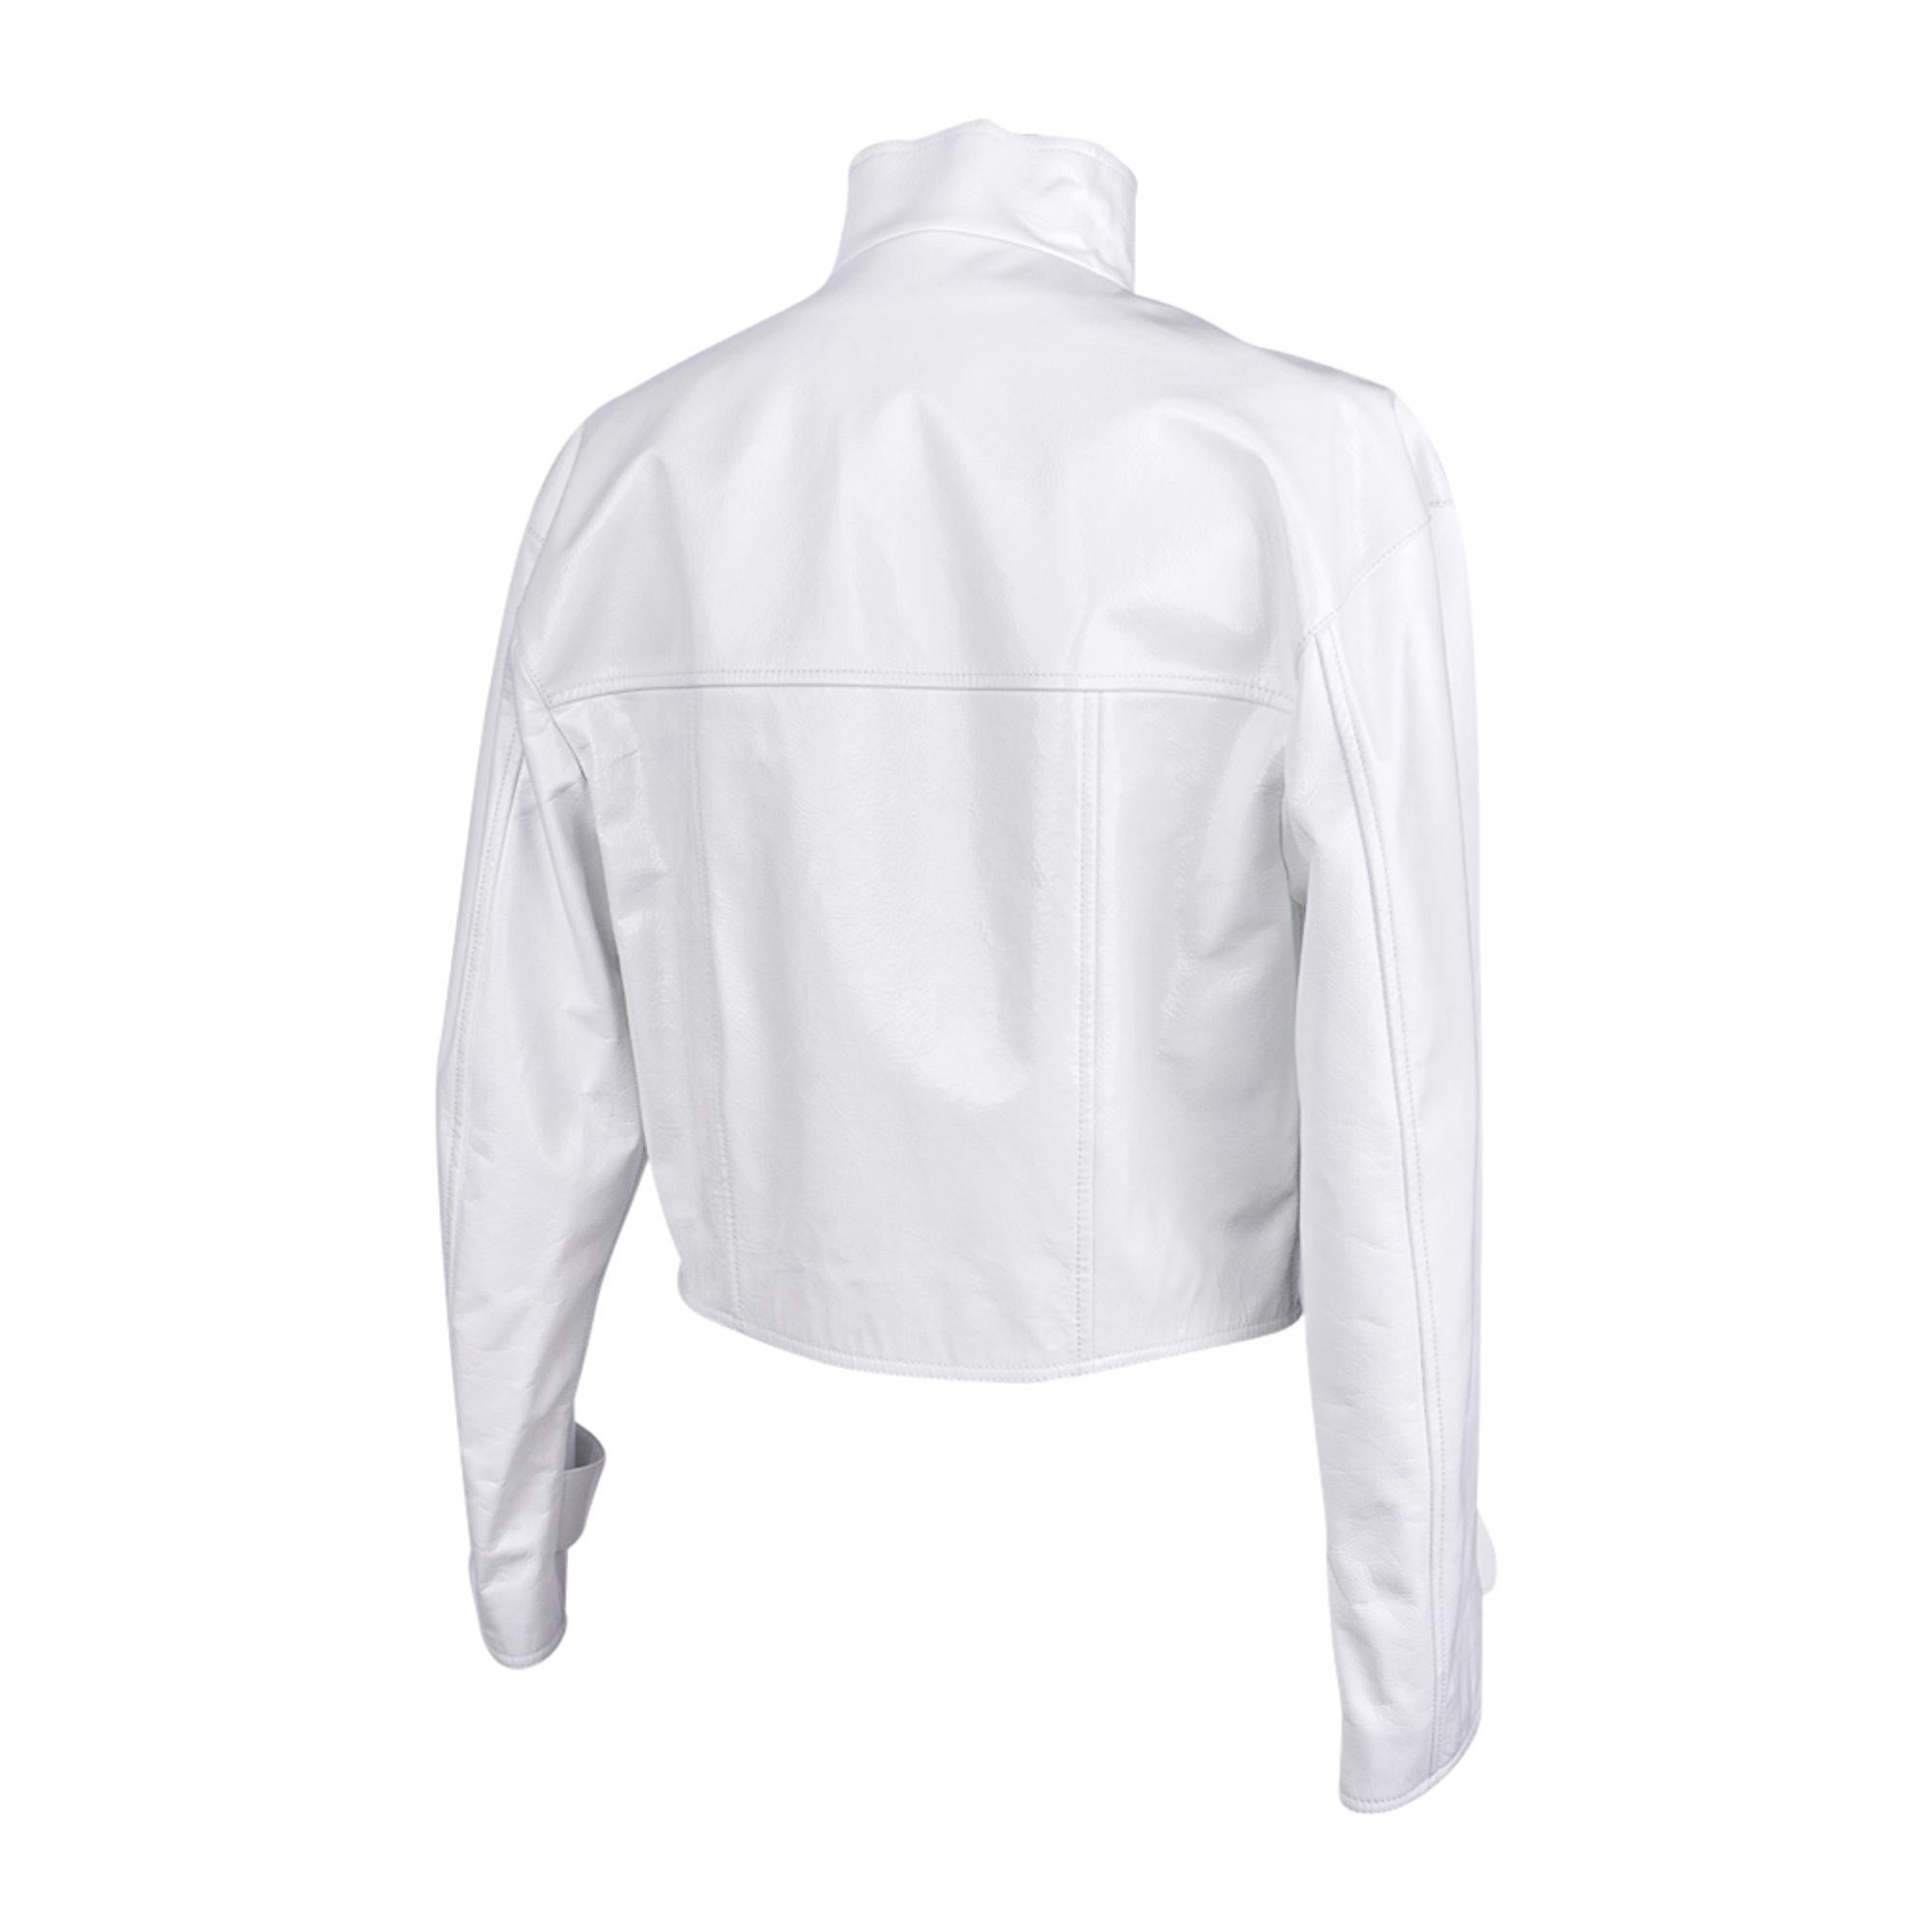 Veste courte Chanel 2020-21FW en cuir verni blanc style motard, taille 36/4, neuve avec étiquettes 5